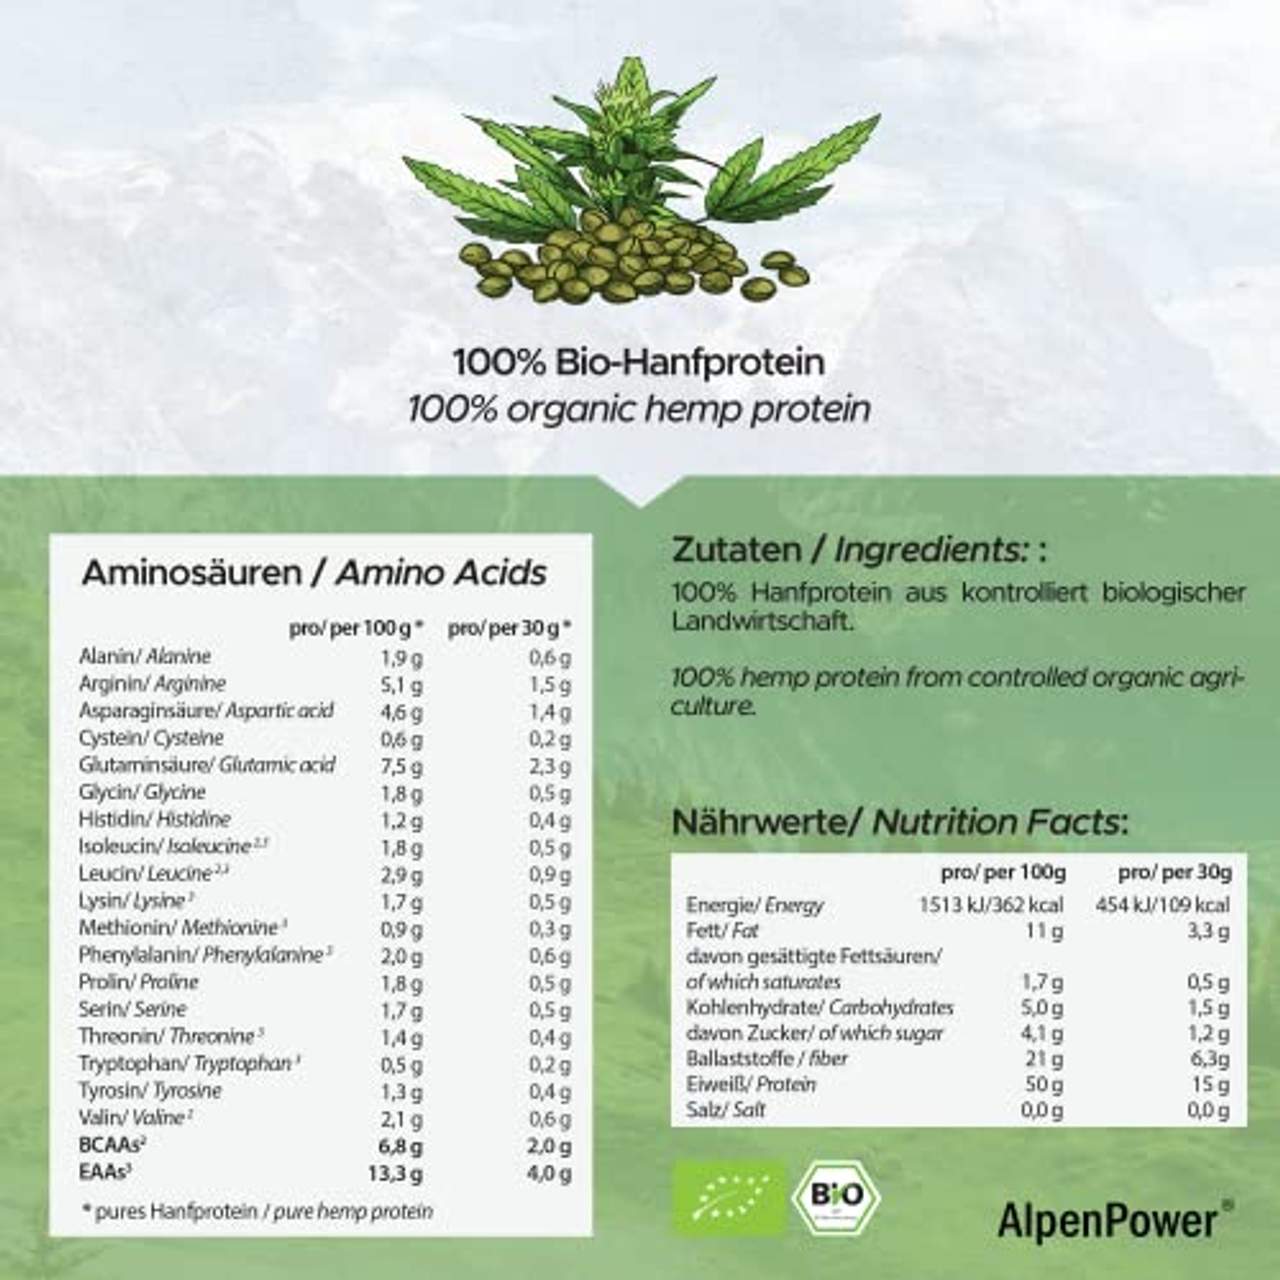 AlpenPower BIO Hanfprotein aus Österreich 600 g I 100% reines Hanfprotein ohne